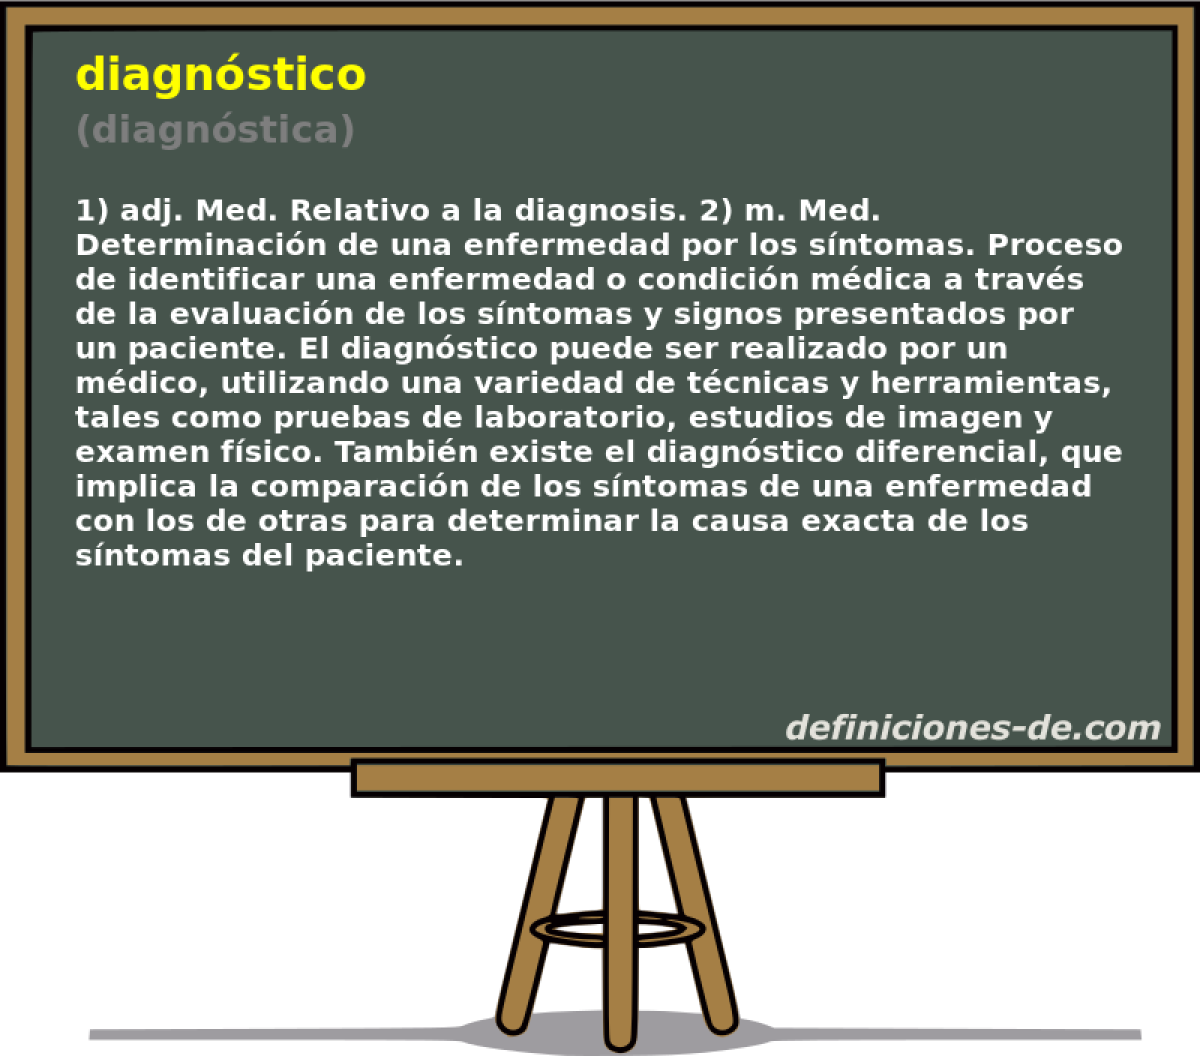 diagnstico (diagnstica)